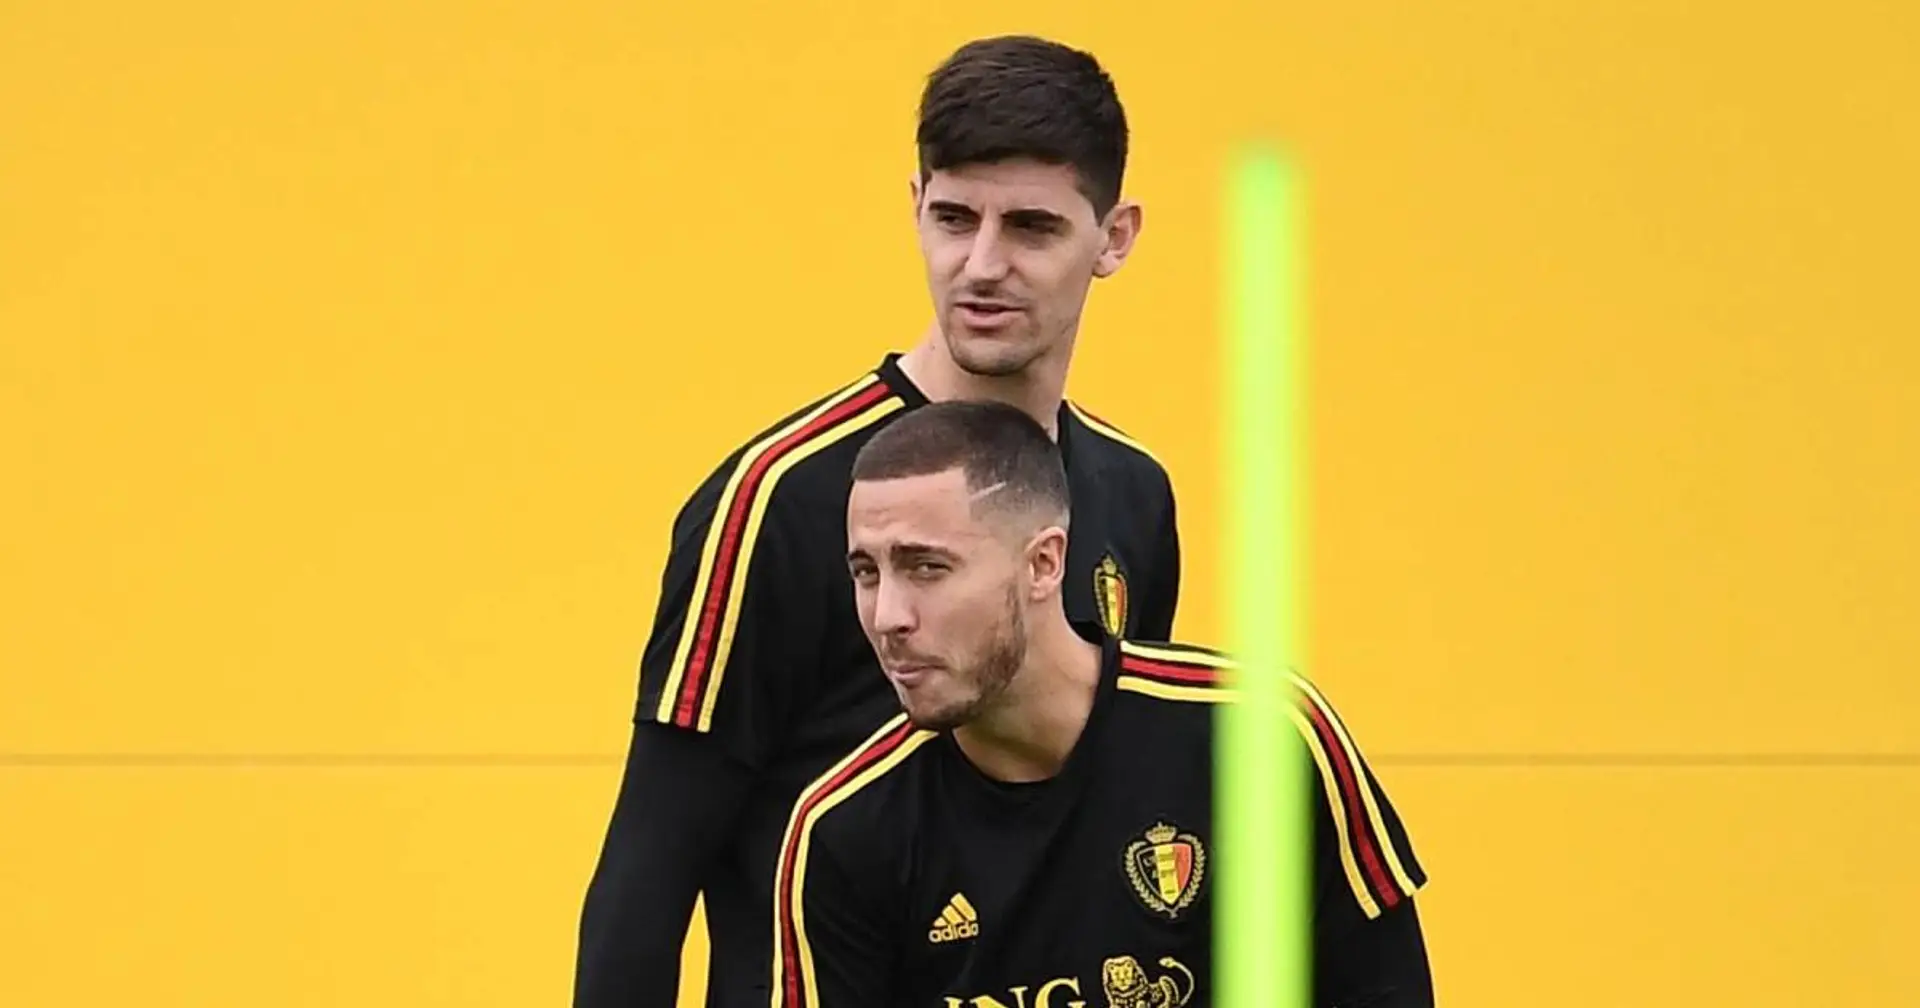 Officiel: Courtois autorisé à rentrer à Madrid après avoir été libéré des matchs internationaux; Hazard se rend au Danemark